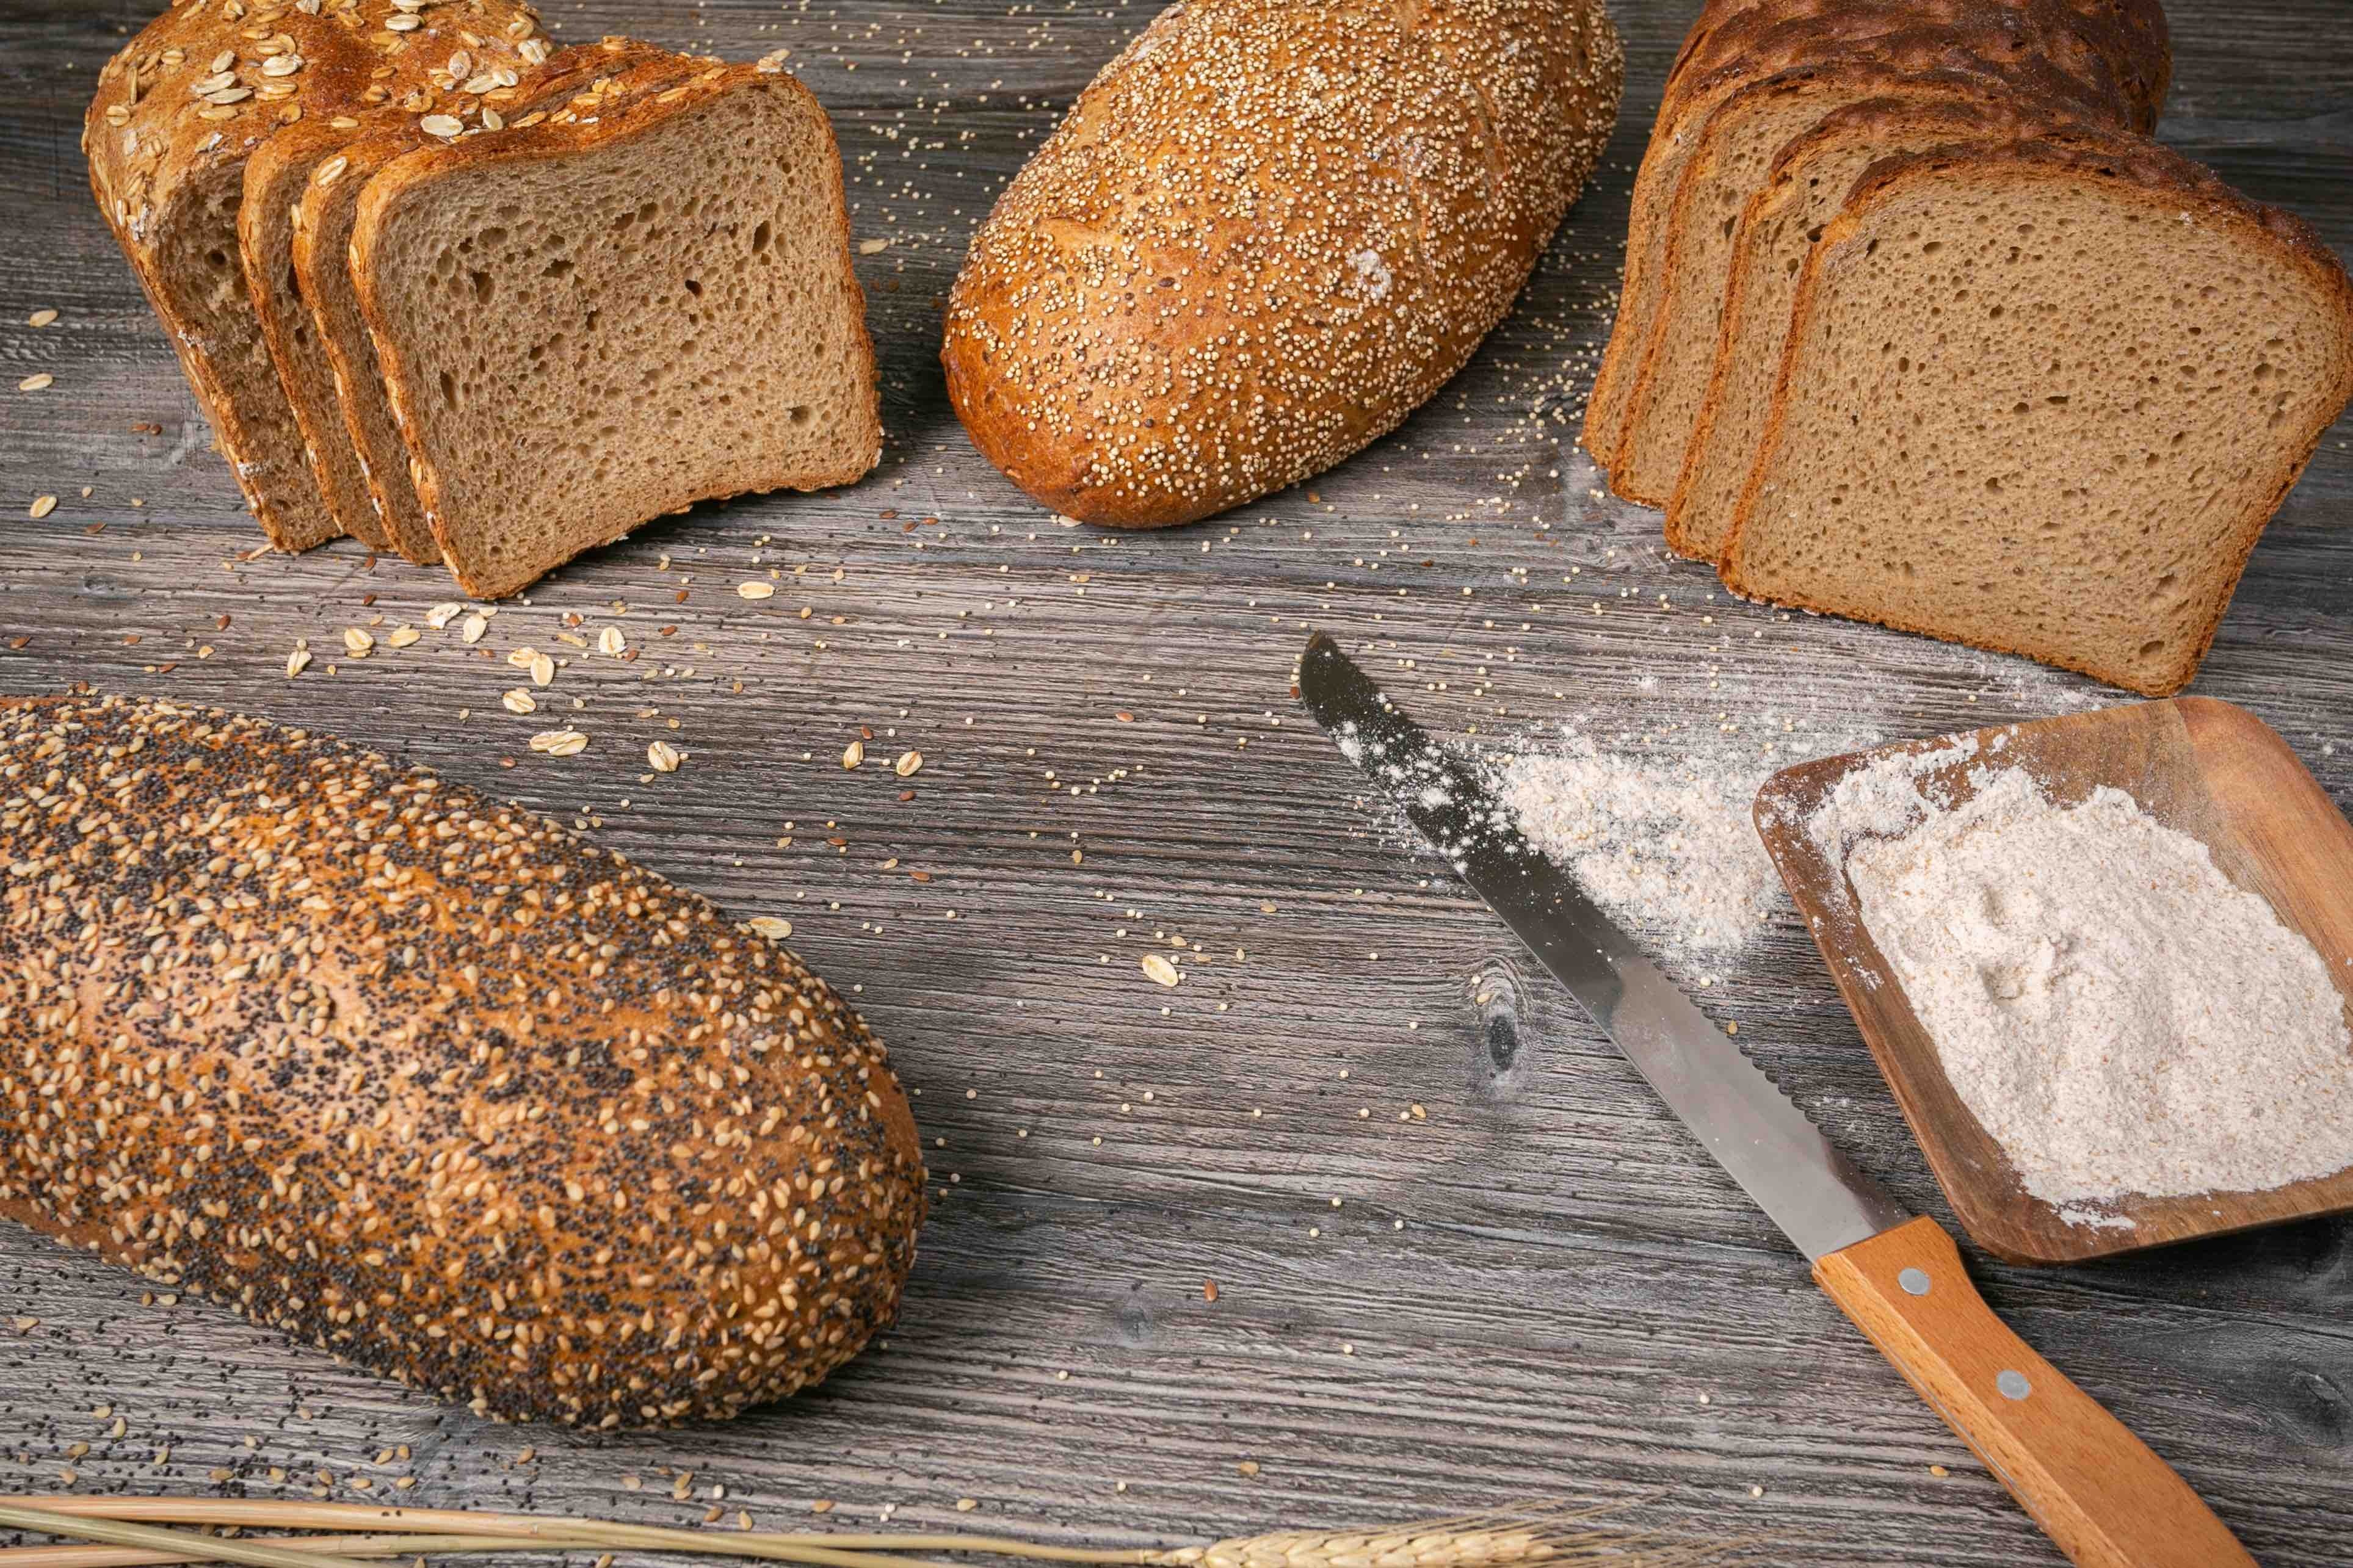 Professional FOOD & BEVERAGE photographer for Ketterer Pan Aleman - German Bread 4